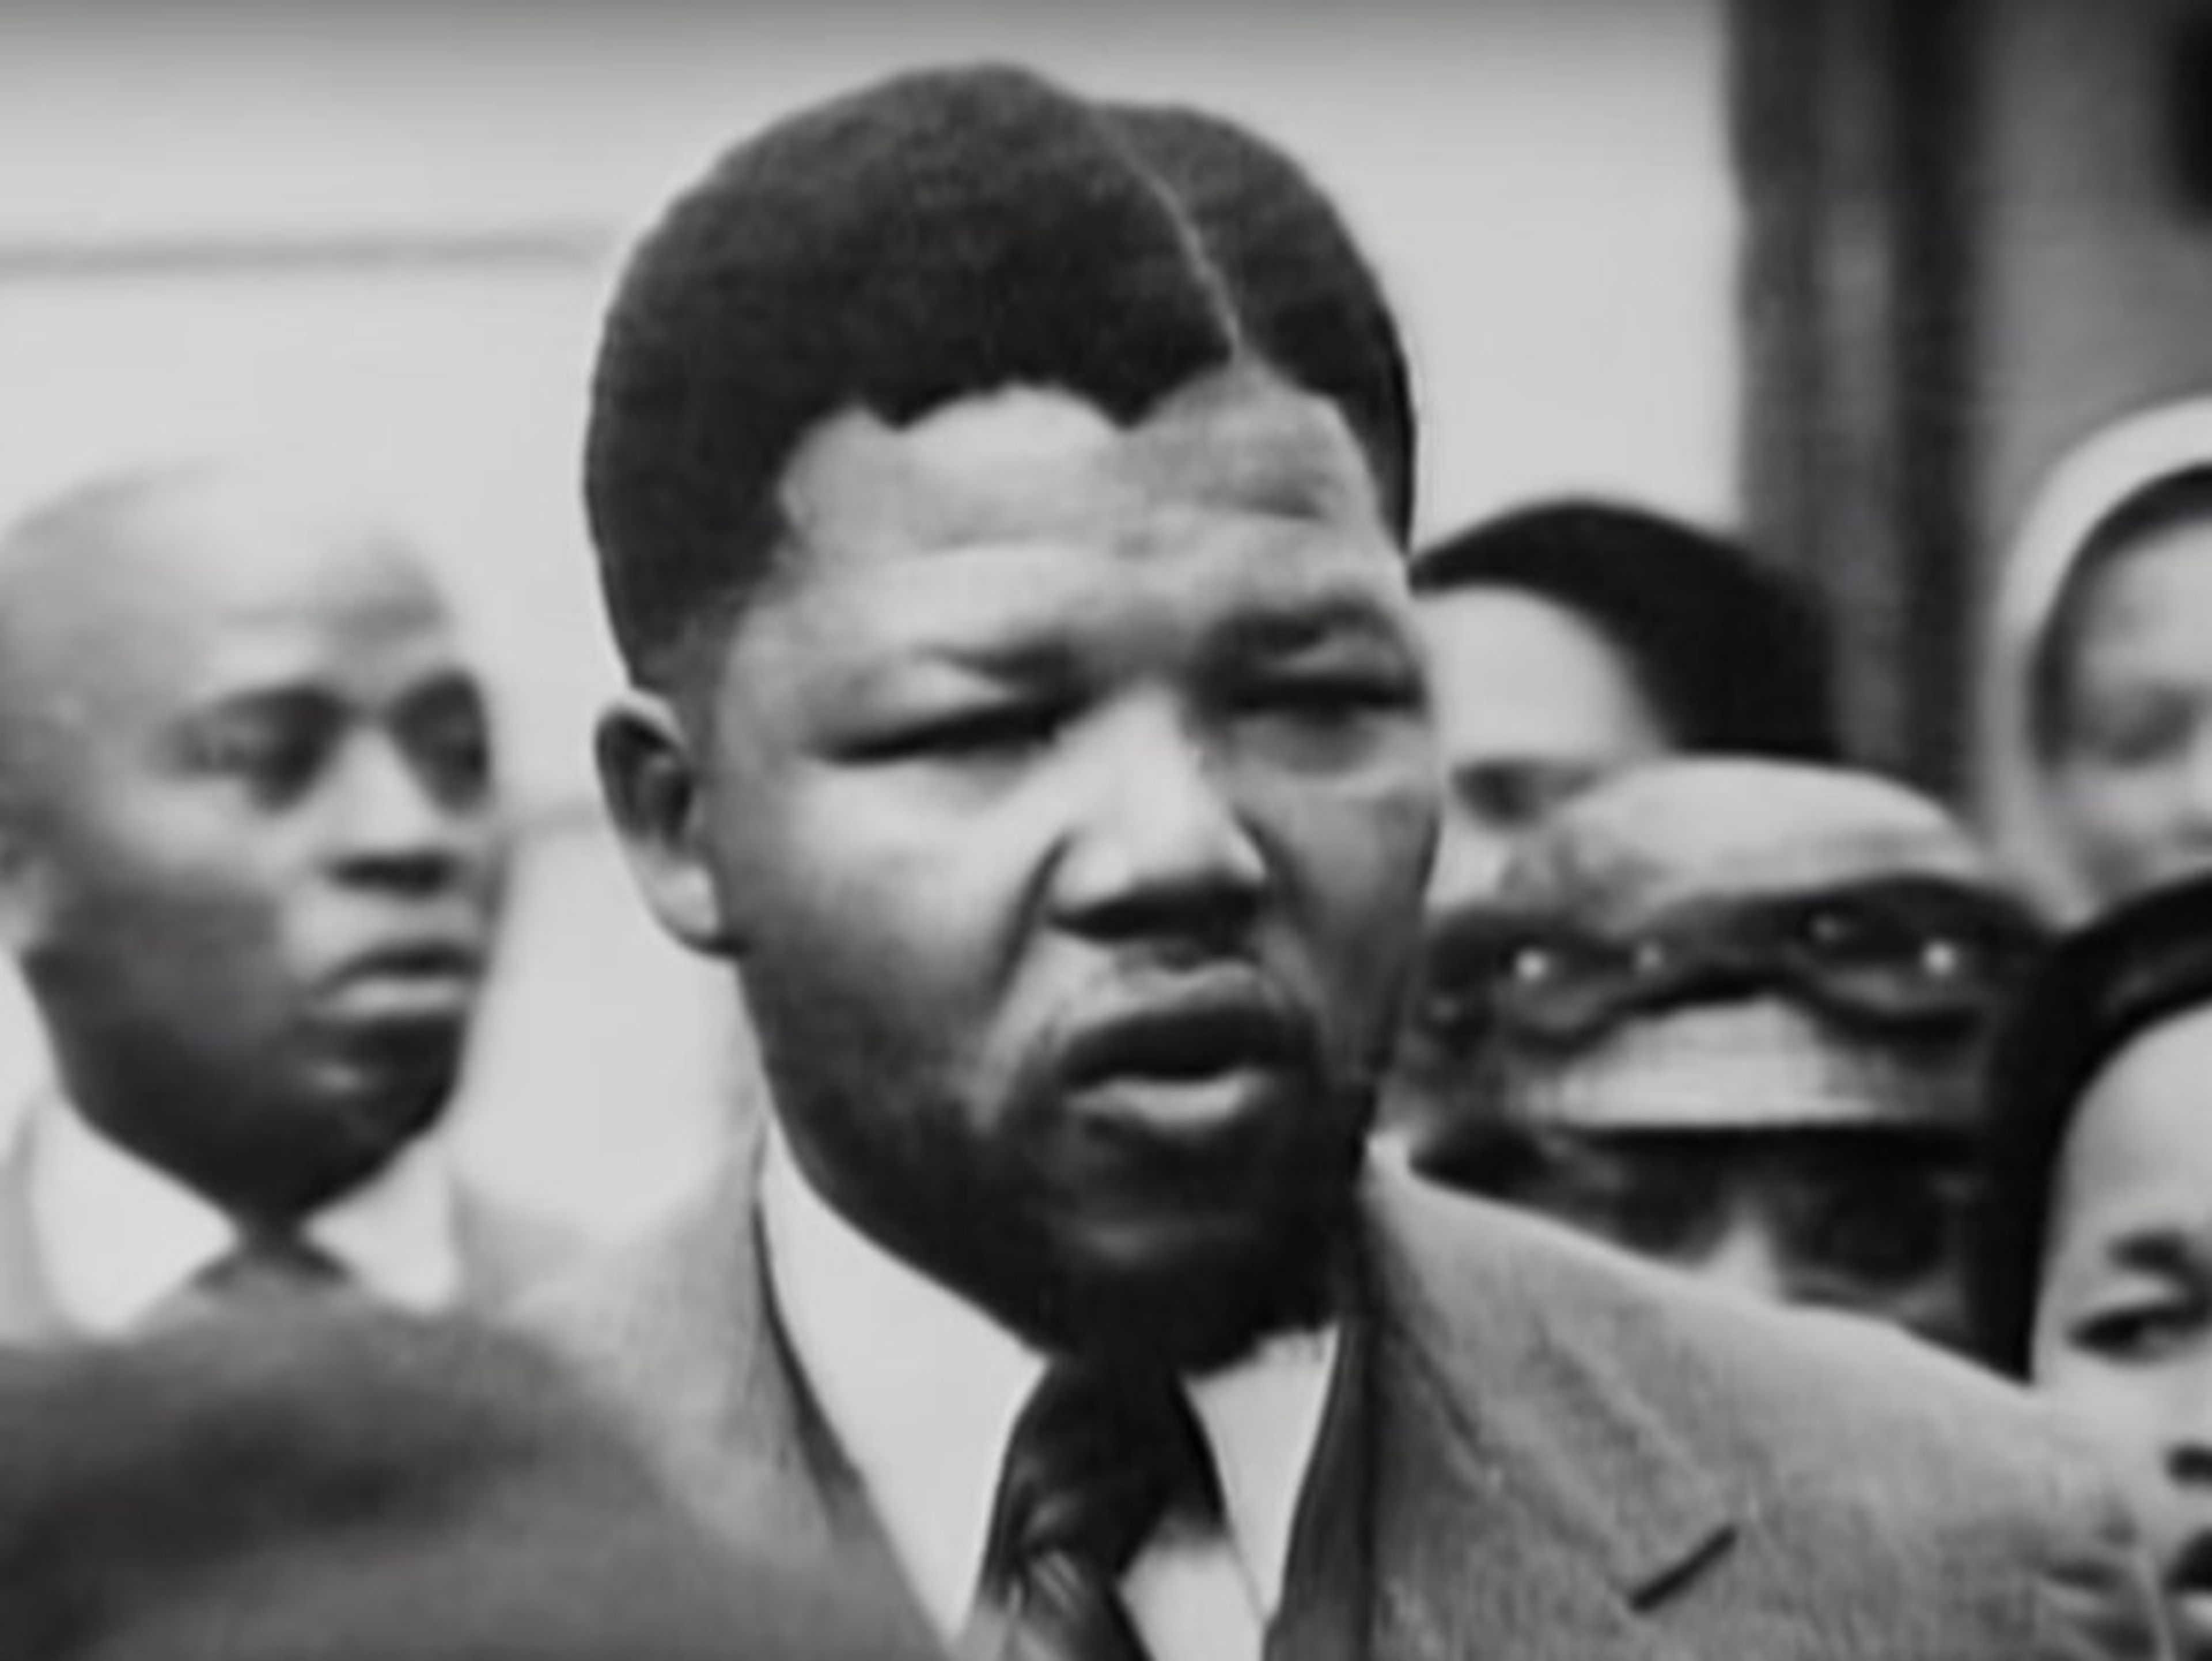 Mandela estudió como abogado antes de unirse a la lucha política contra el nacionalista del gobierno como miembro del Congreso Nacional Africano.YouTube / UN BELARUS